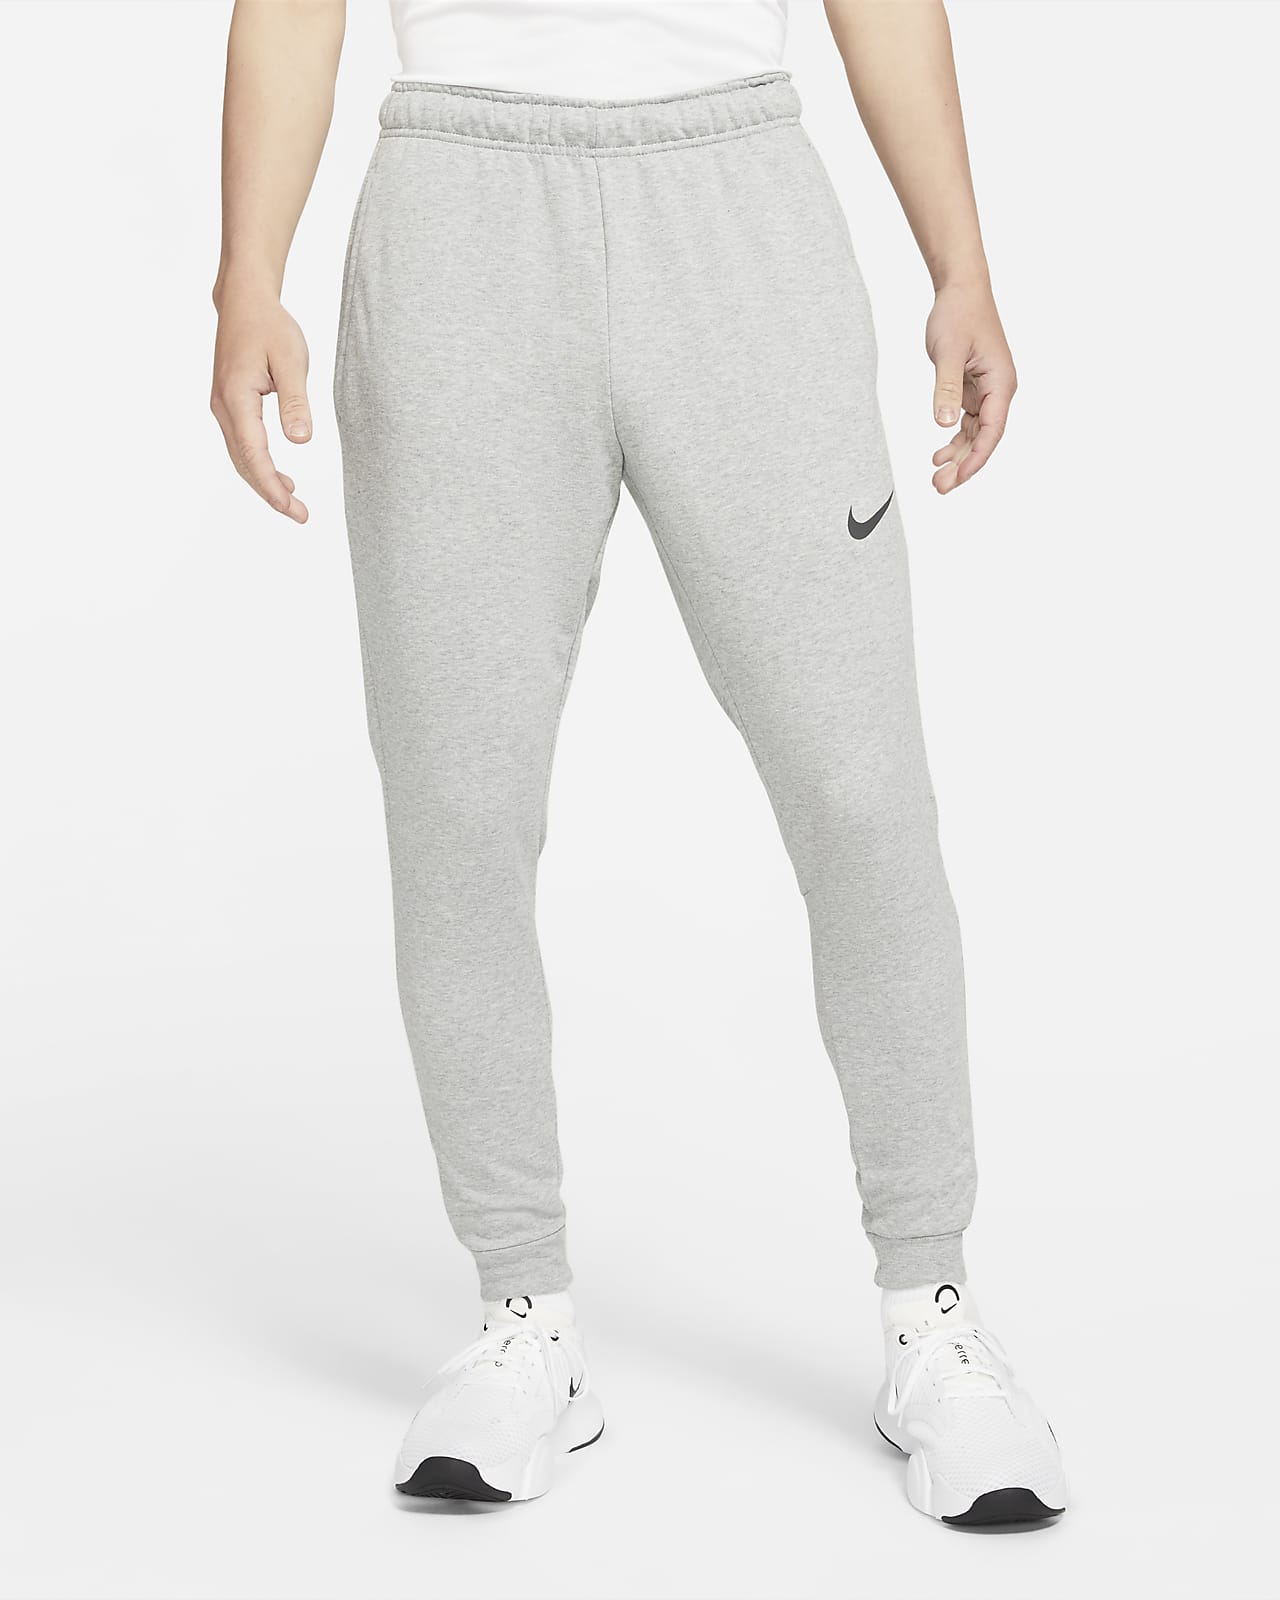 Nike Dri-FIT Cotton Pants - Black - SoccerPro